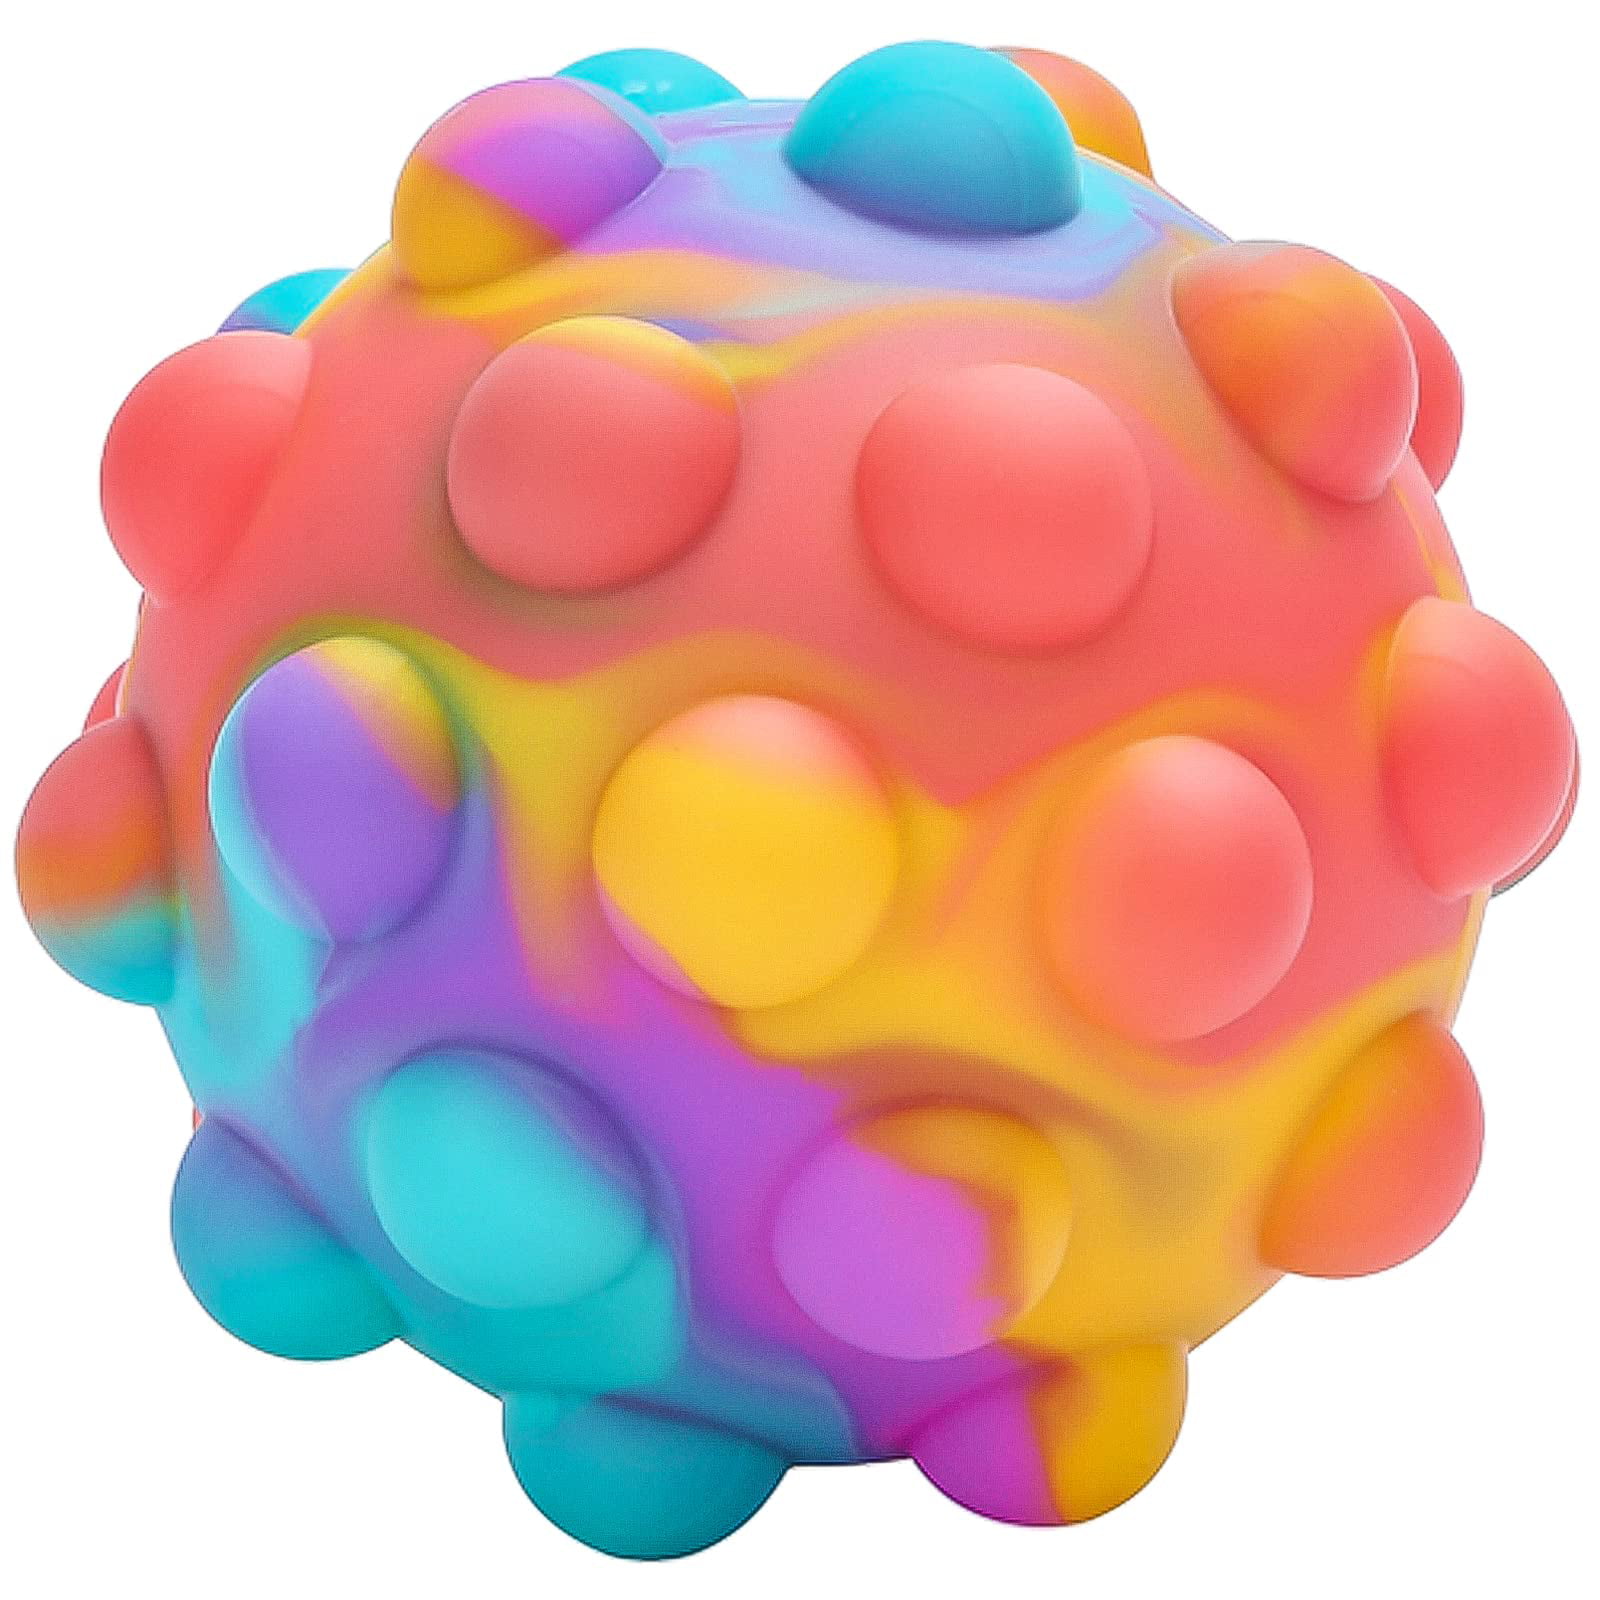 Acheter 4Pcs Pop Balls 3D Silicone Cartoon Fidget Squeeze Balls